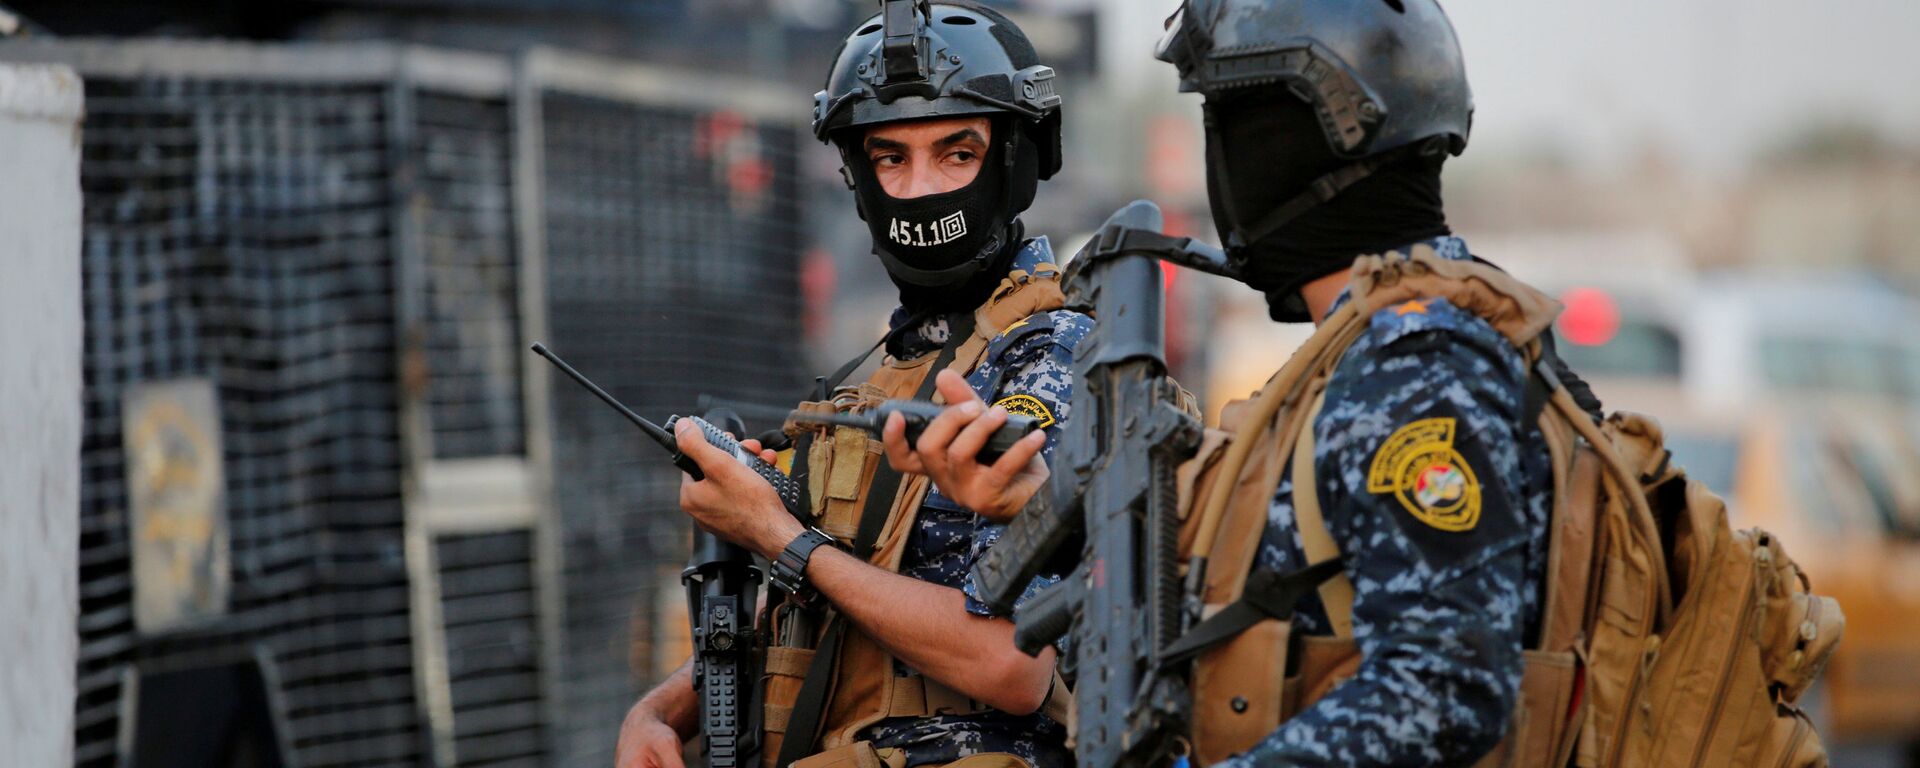 أفراد من الشرطة الفيدرالية العراقية يراقبون مركبات عسكرية في أحد شوارع بغداد، 7 أكتوبر/تشرين الأول 2019 - سبوتنيك عربي, 1920, 22.02.2021